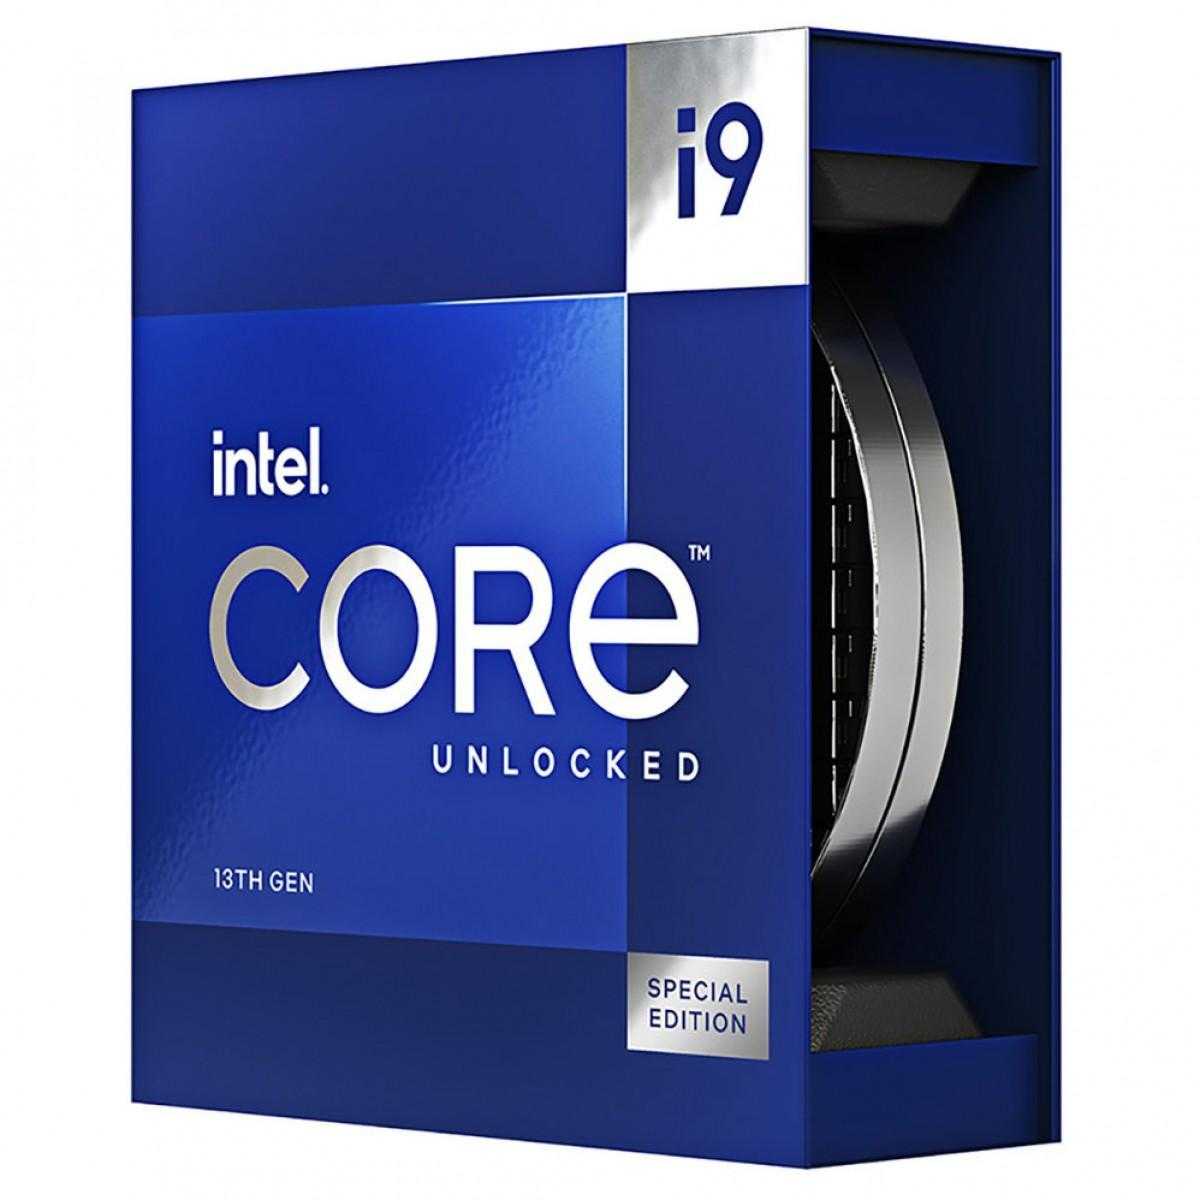 Intel анонсировал Core i9-13900KS с первой в мире максимальной турбочастотой 6,0 ГГц